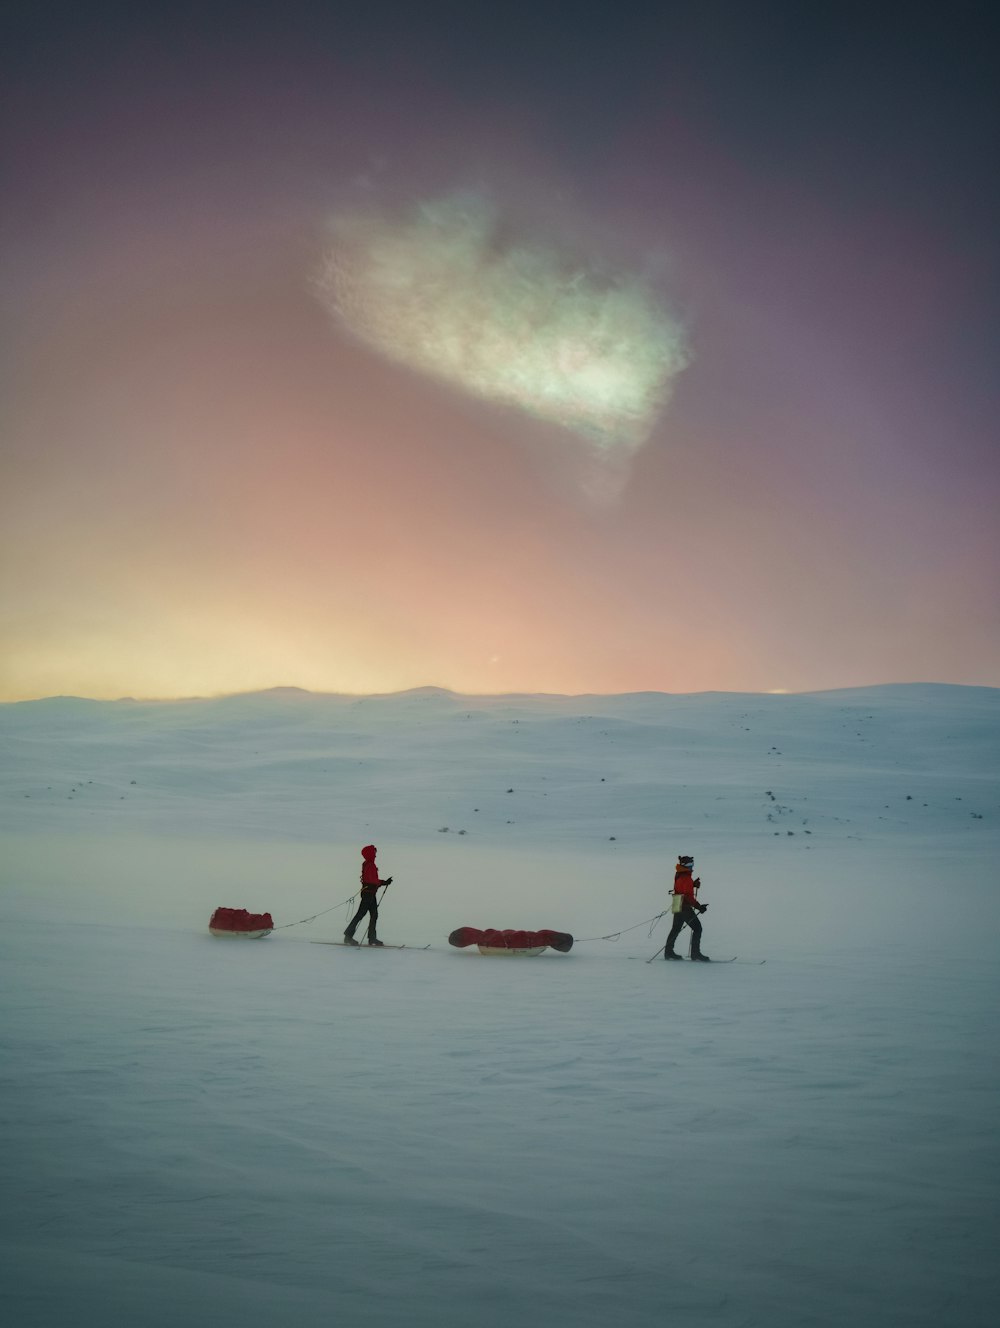 Un par de personas caminando por un campo cubierto de nieve